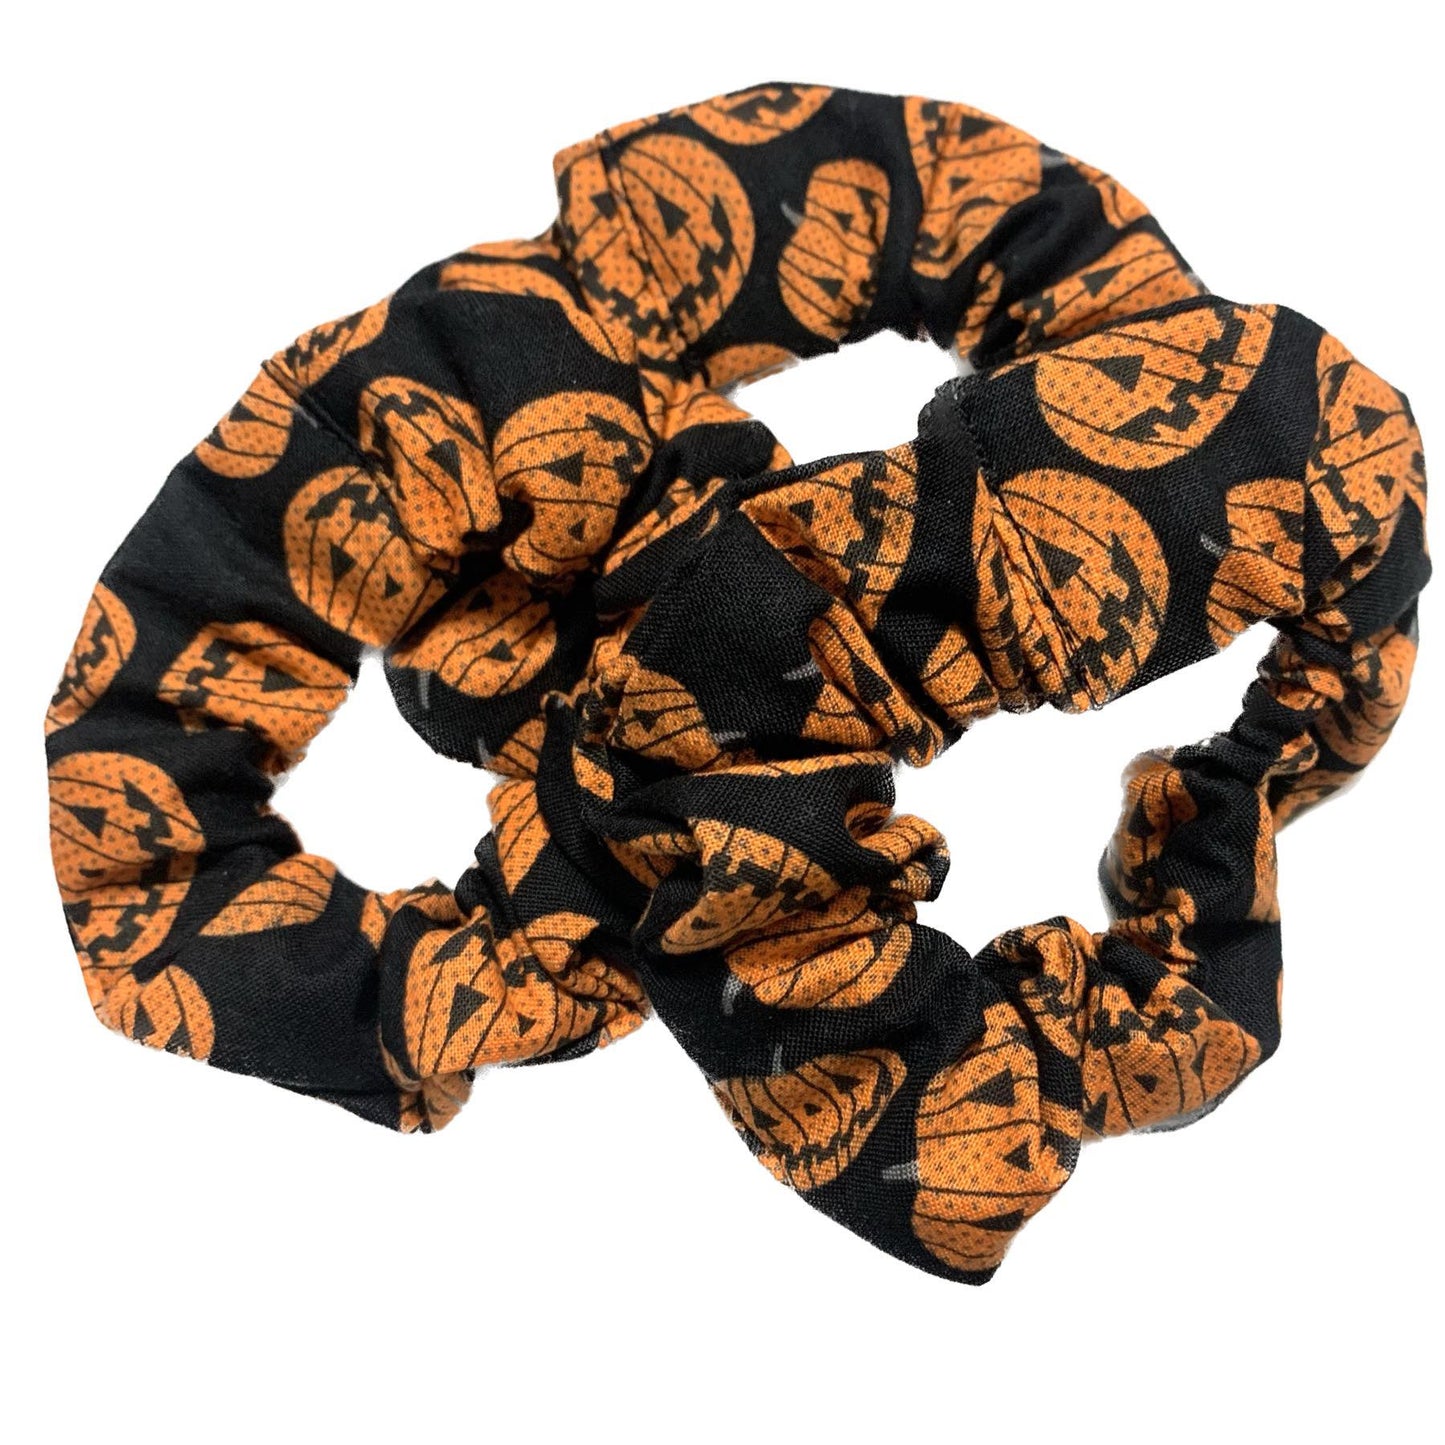 MAKIN' WHOOPEE - "Lots of Jacks" Halloween Scrunchies